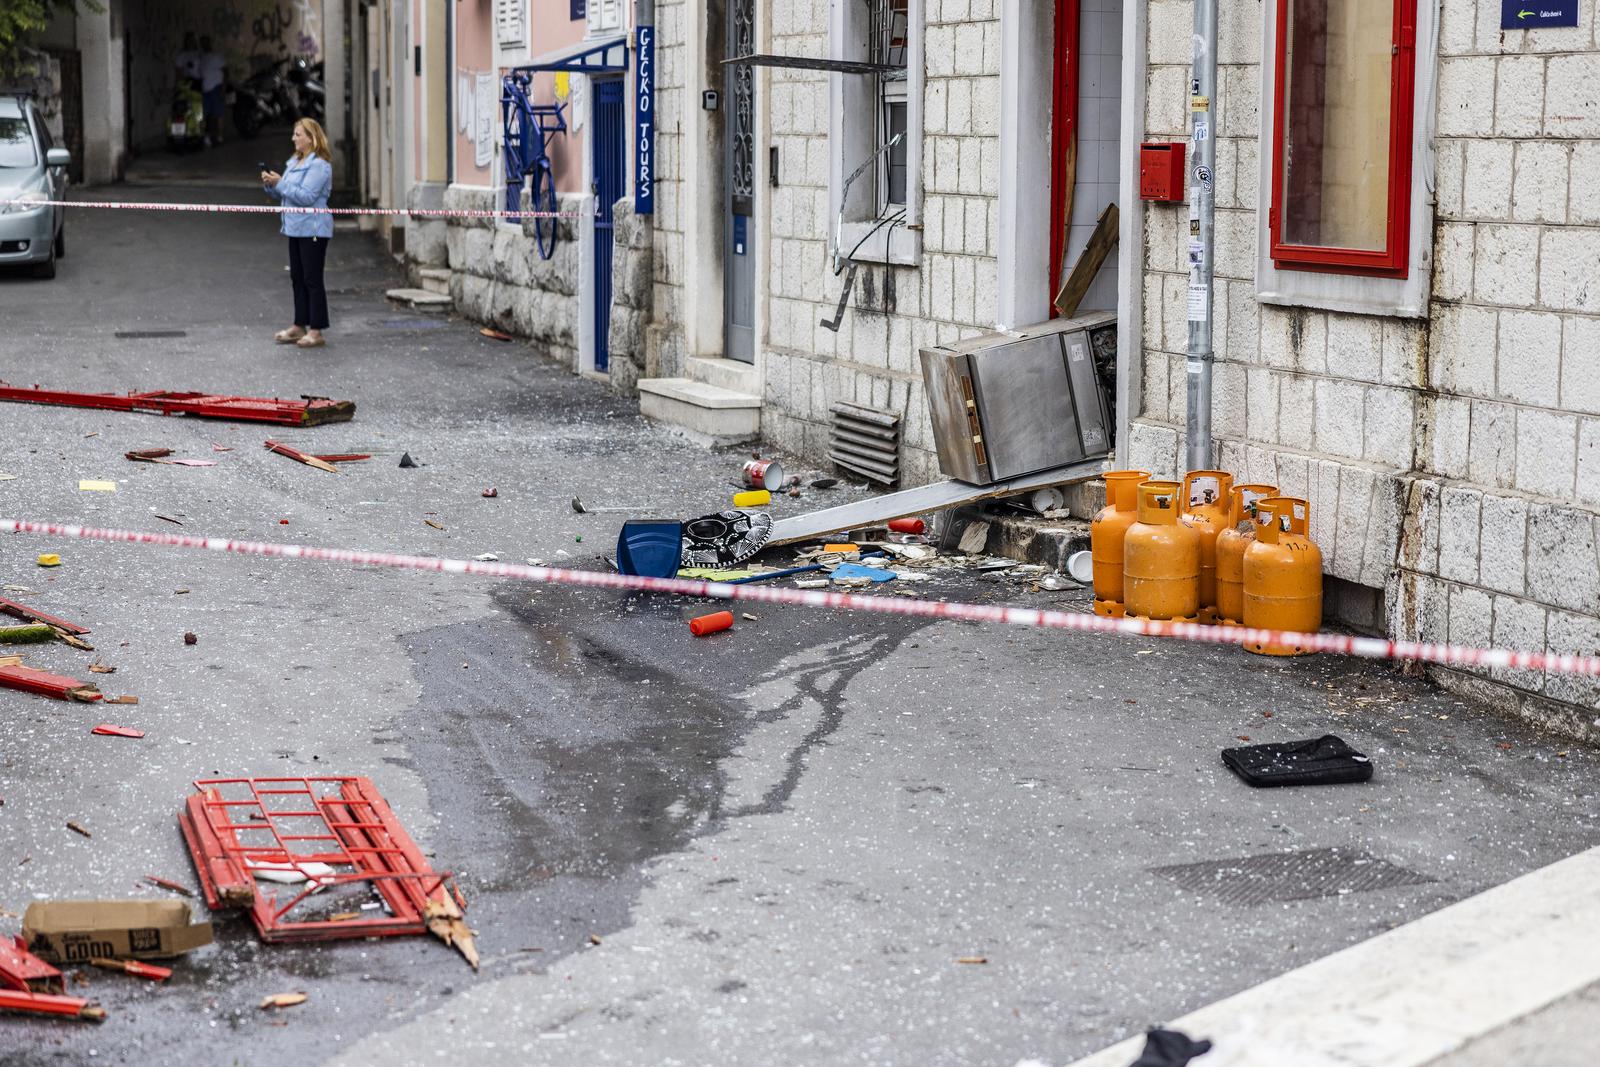 01.10.2022., Split - Eksplozija u restoranu u centru Splita. Dvoje ozlijedenih prevezeno je u bolnicu. Photo: Milan Sabic/PIXSELL